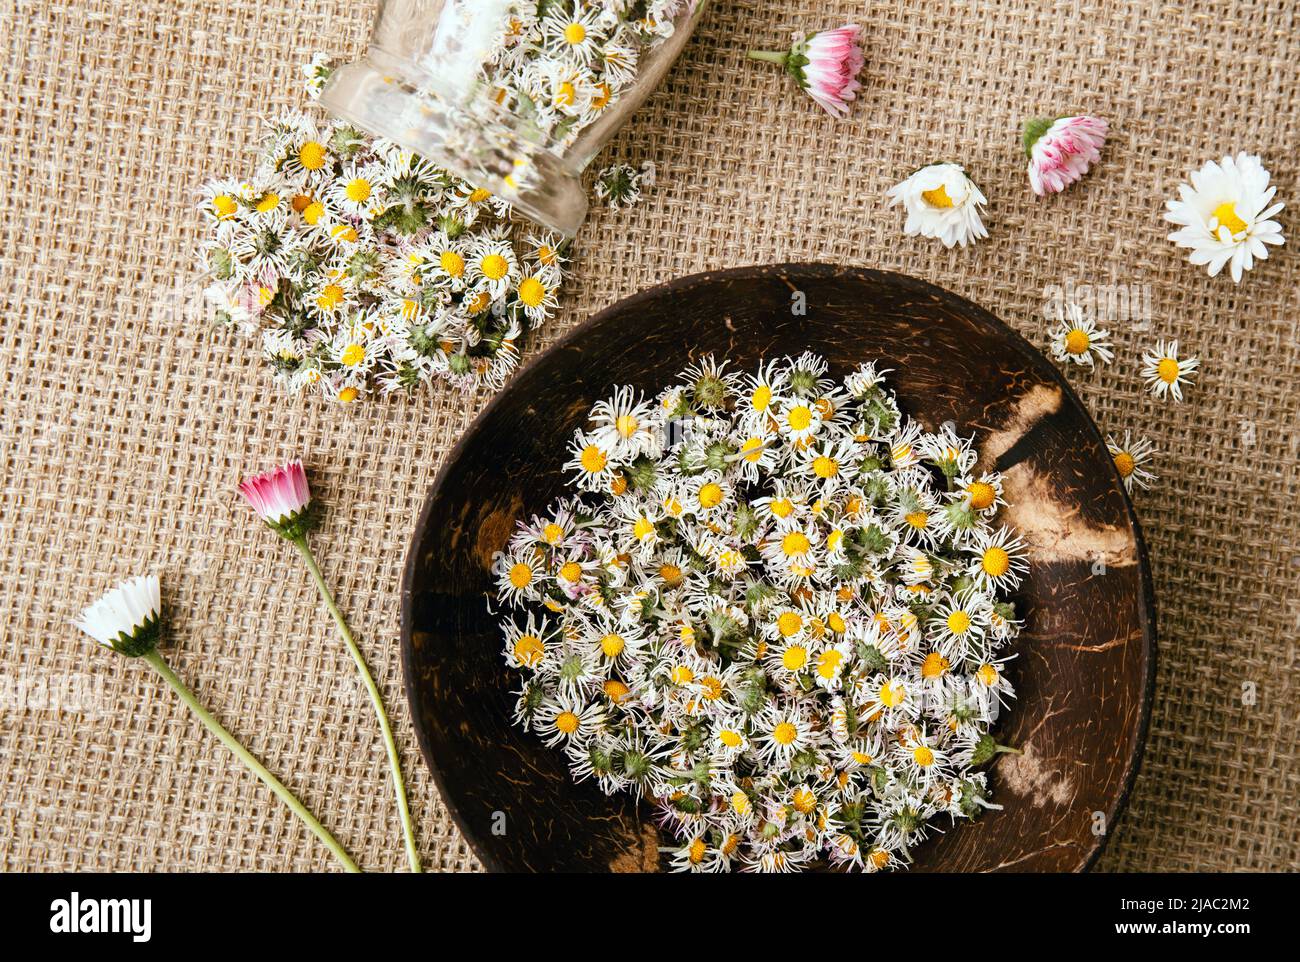 Planta medicinal herbaria seca Common Daisy, también conocida como Bellis perennis. Flores secas en tarro de vidrio y tazón de madera, listo para hacer té de hierbas. Foto de stock